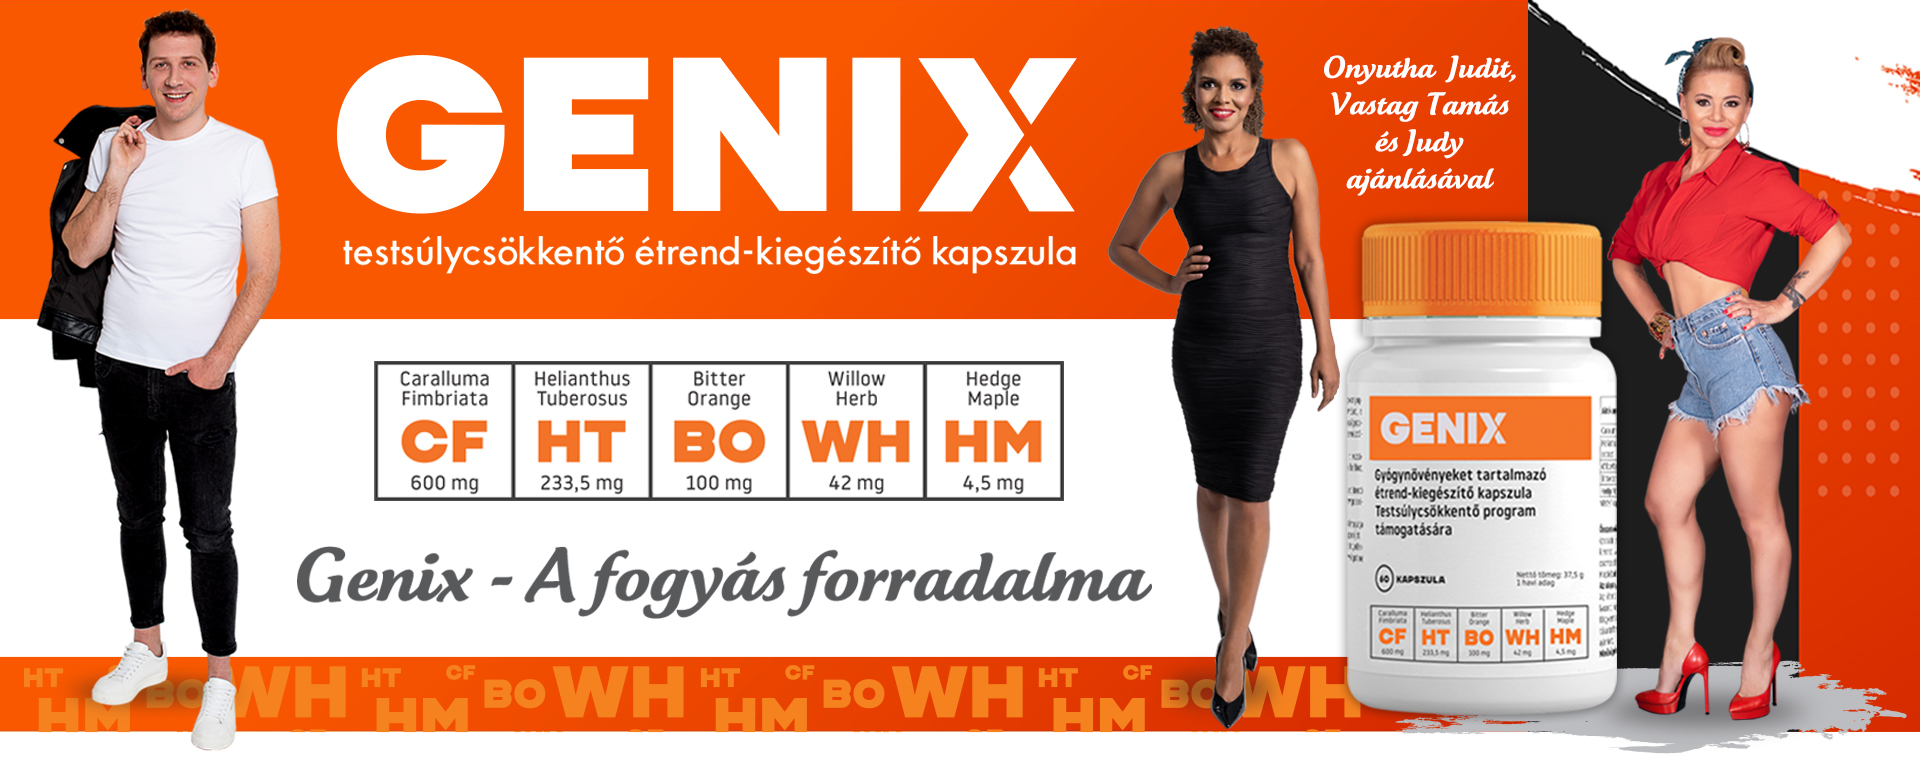 GENIX testsúlycsökkentő étrend-kiegészítő kapszula db 3 havi kúra - cibau-granule.cz